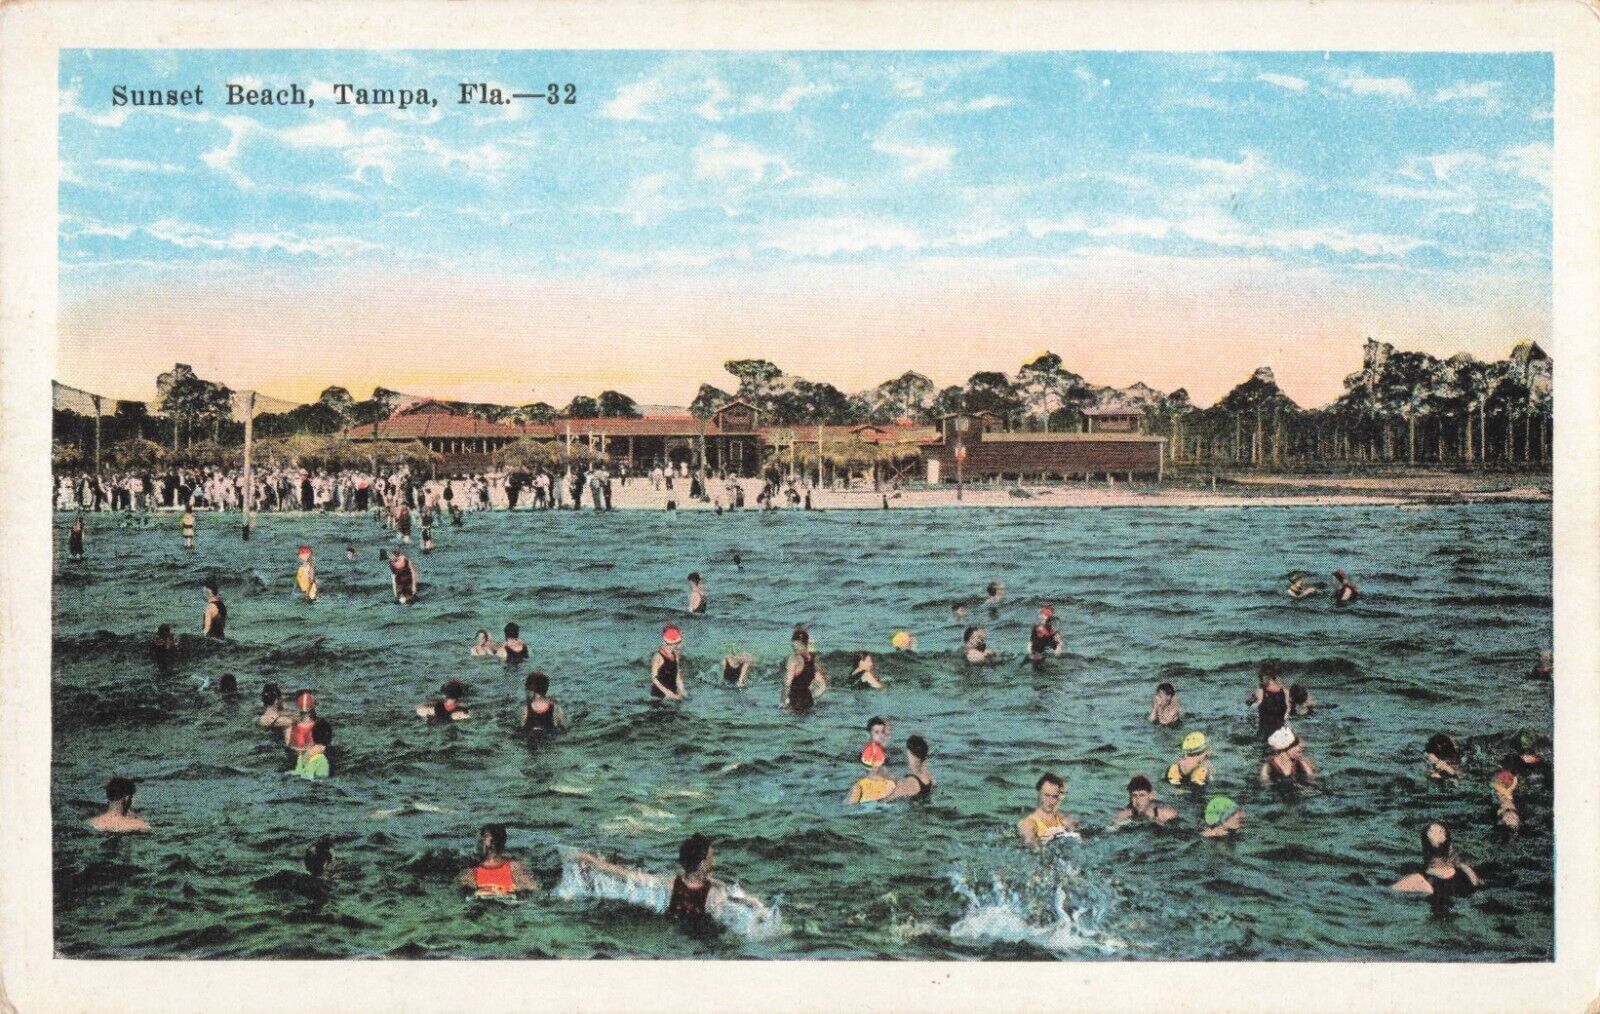 Bathers at Sunset Beach Tampa Florida FL c1920 Postcard